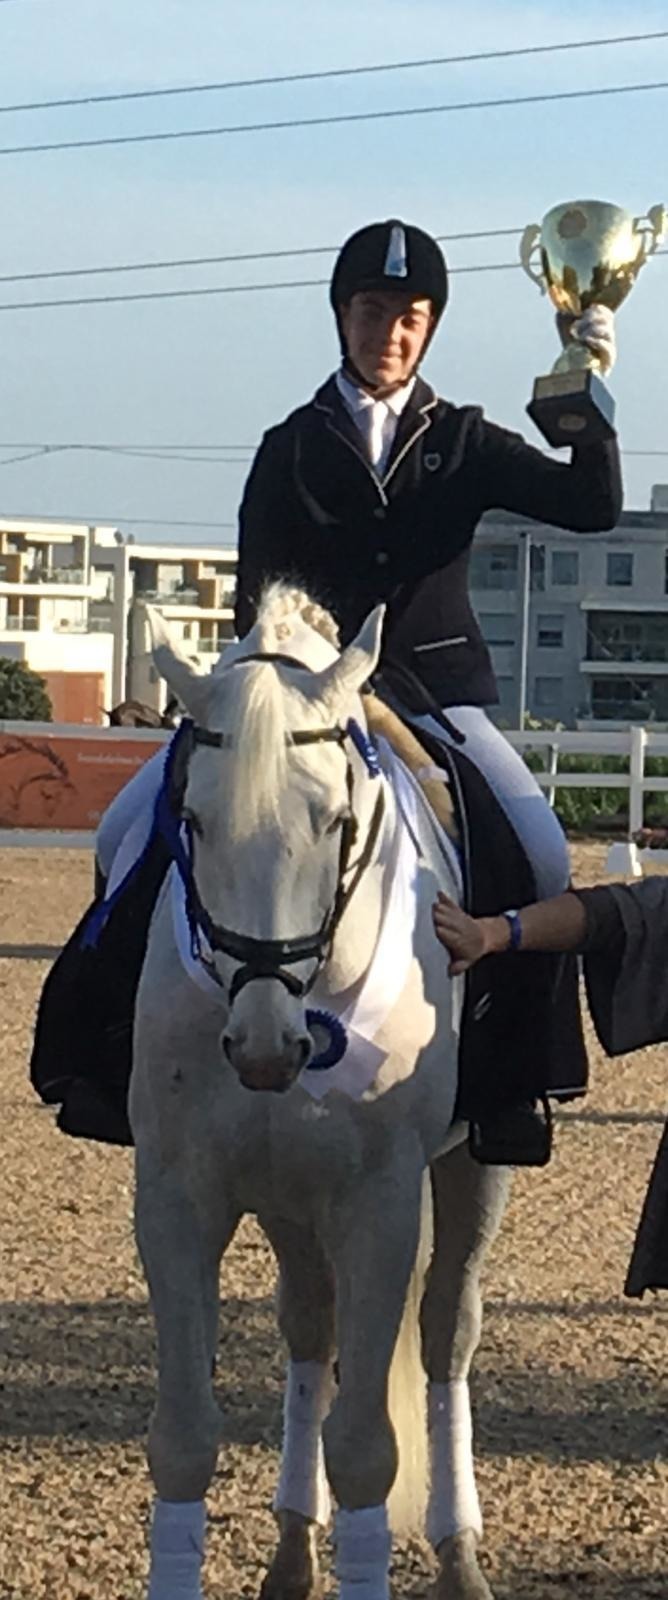 ראשון ברכיבה! עומר מאירוביץ תלמיד כיתה ט' בחטיבת יונתן בעיר, זכה במקום הראשון בתחרות ארצית לרכיבה על סוסים, בקטגוריה רכיבה אמנותית